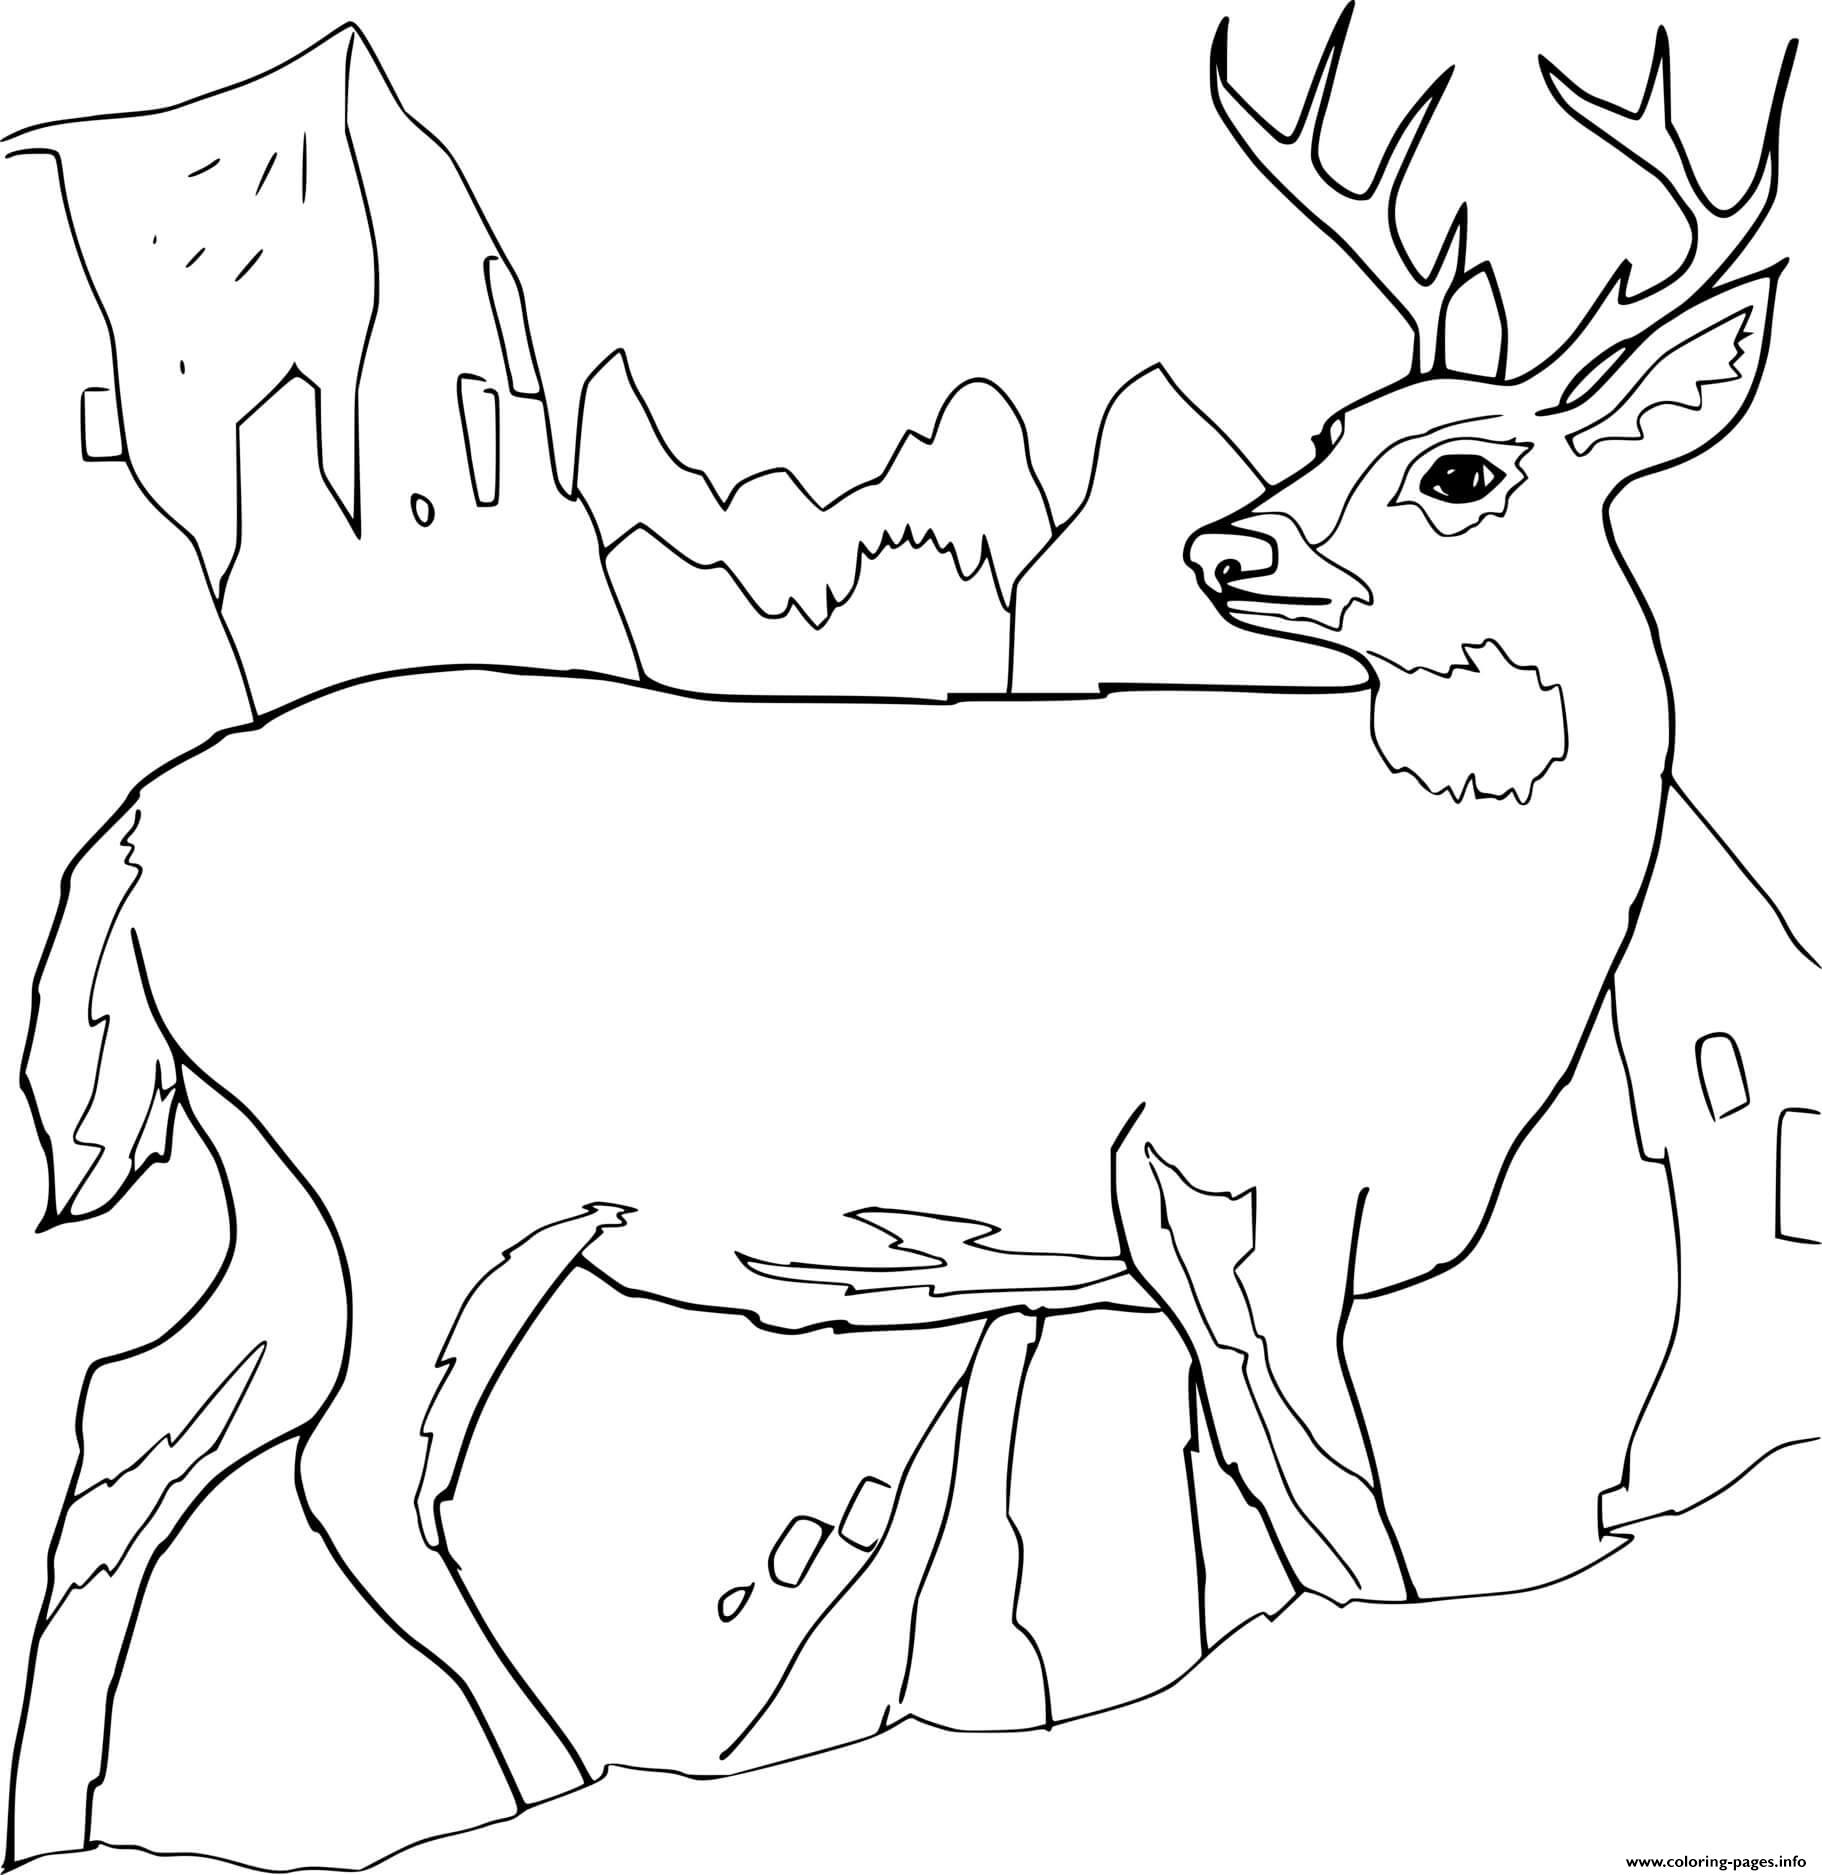 printable-buck-deer-coloring-pages